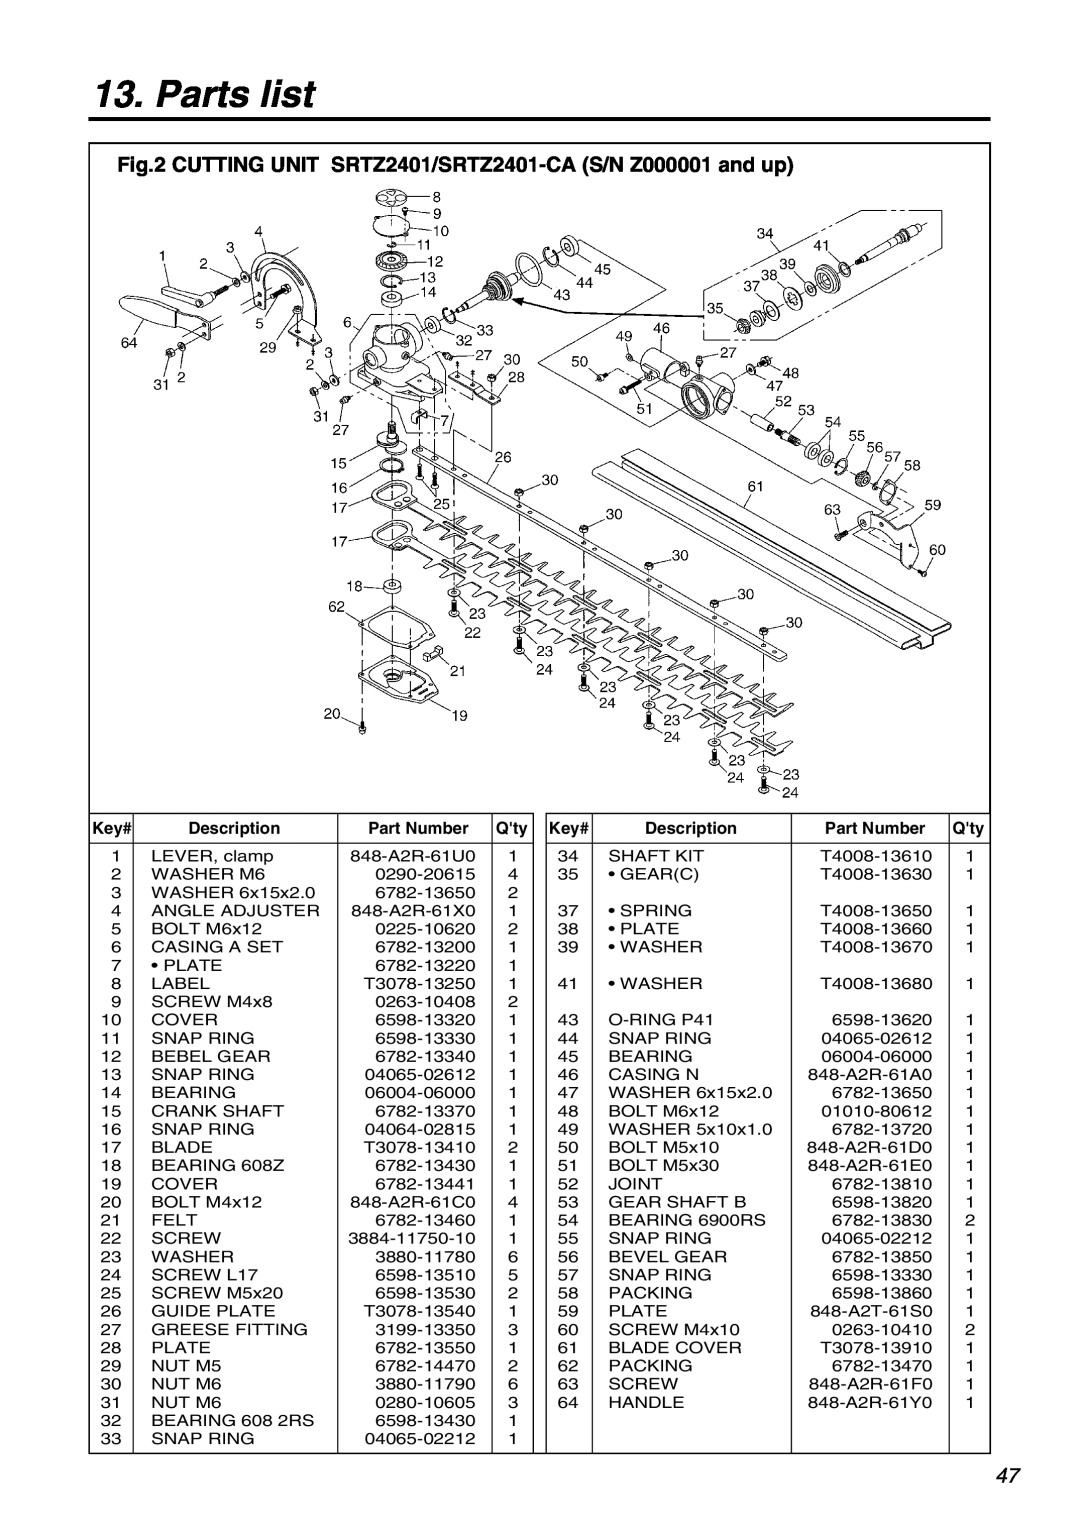 Univex SRTZ2401-CA manual Parts list, Key# 